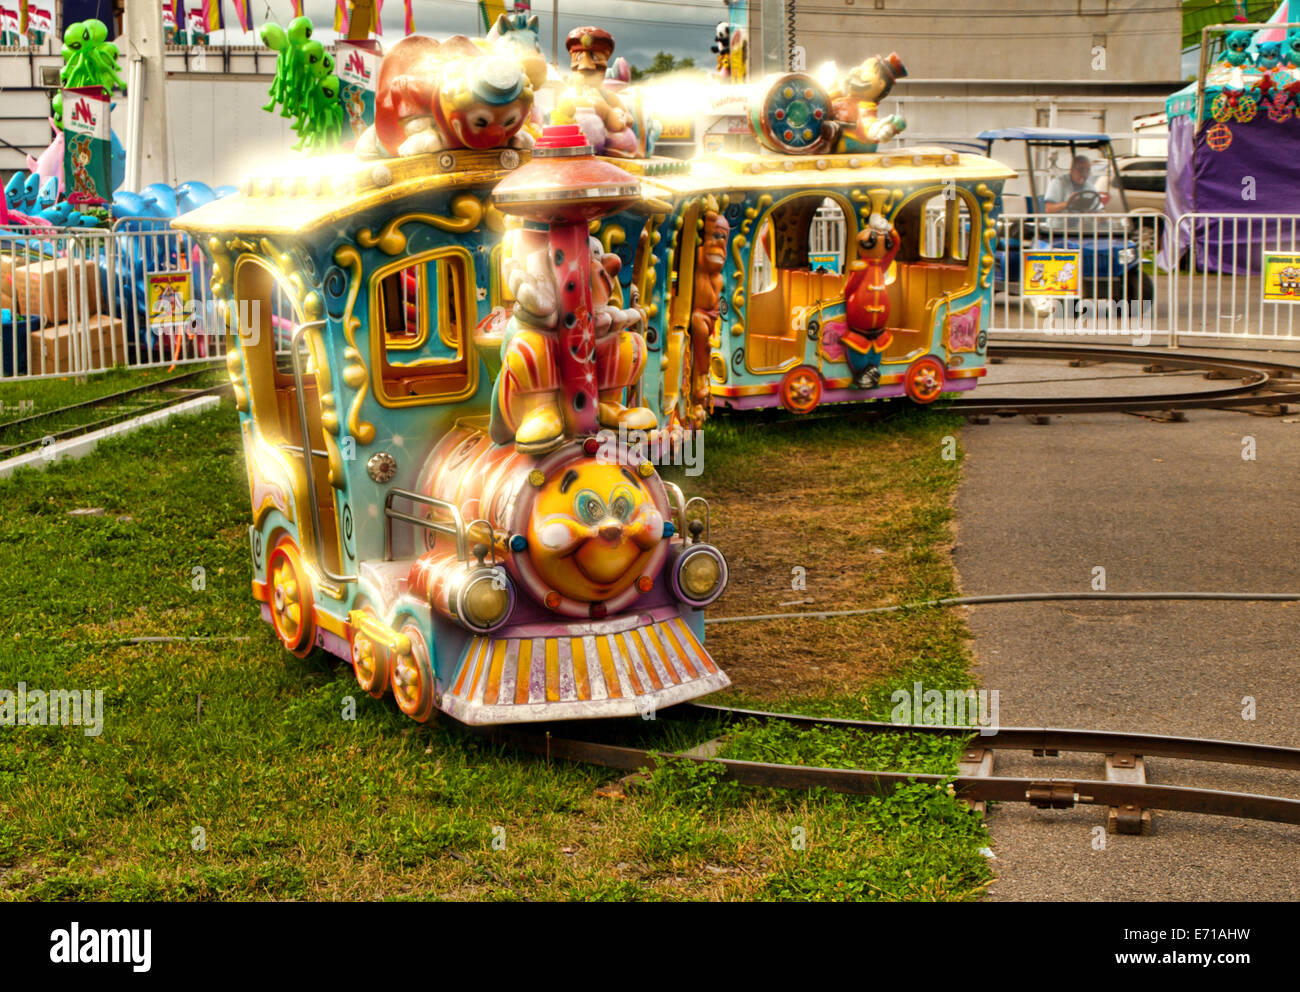 children's train ride at a fair Stock Photo